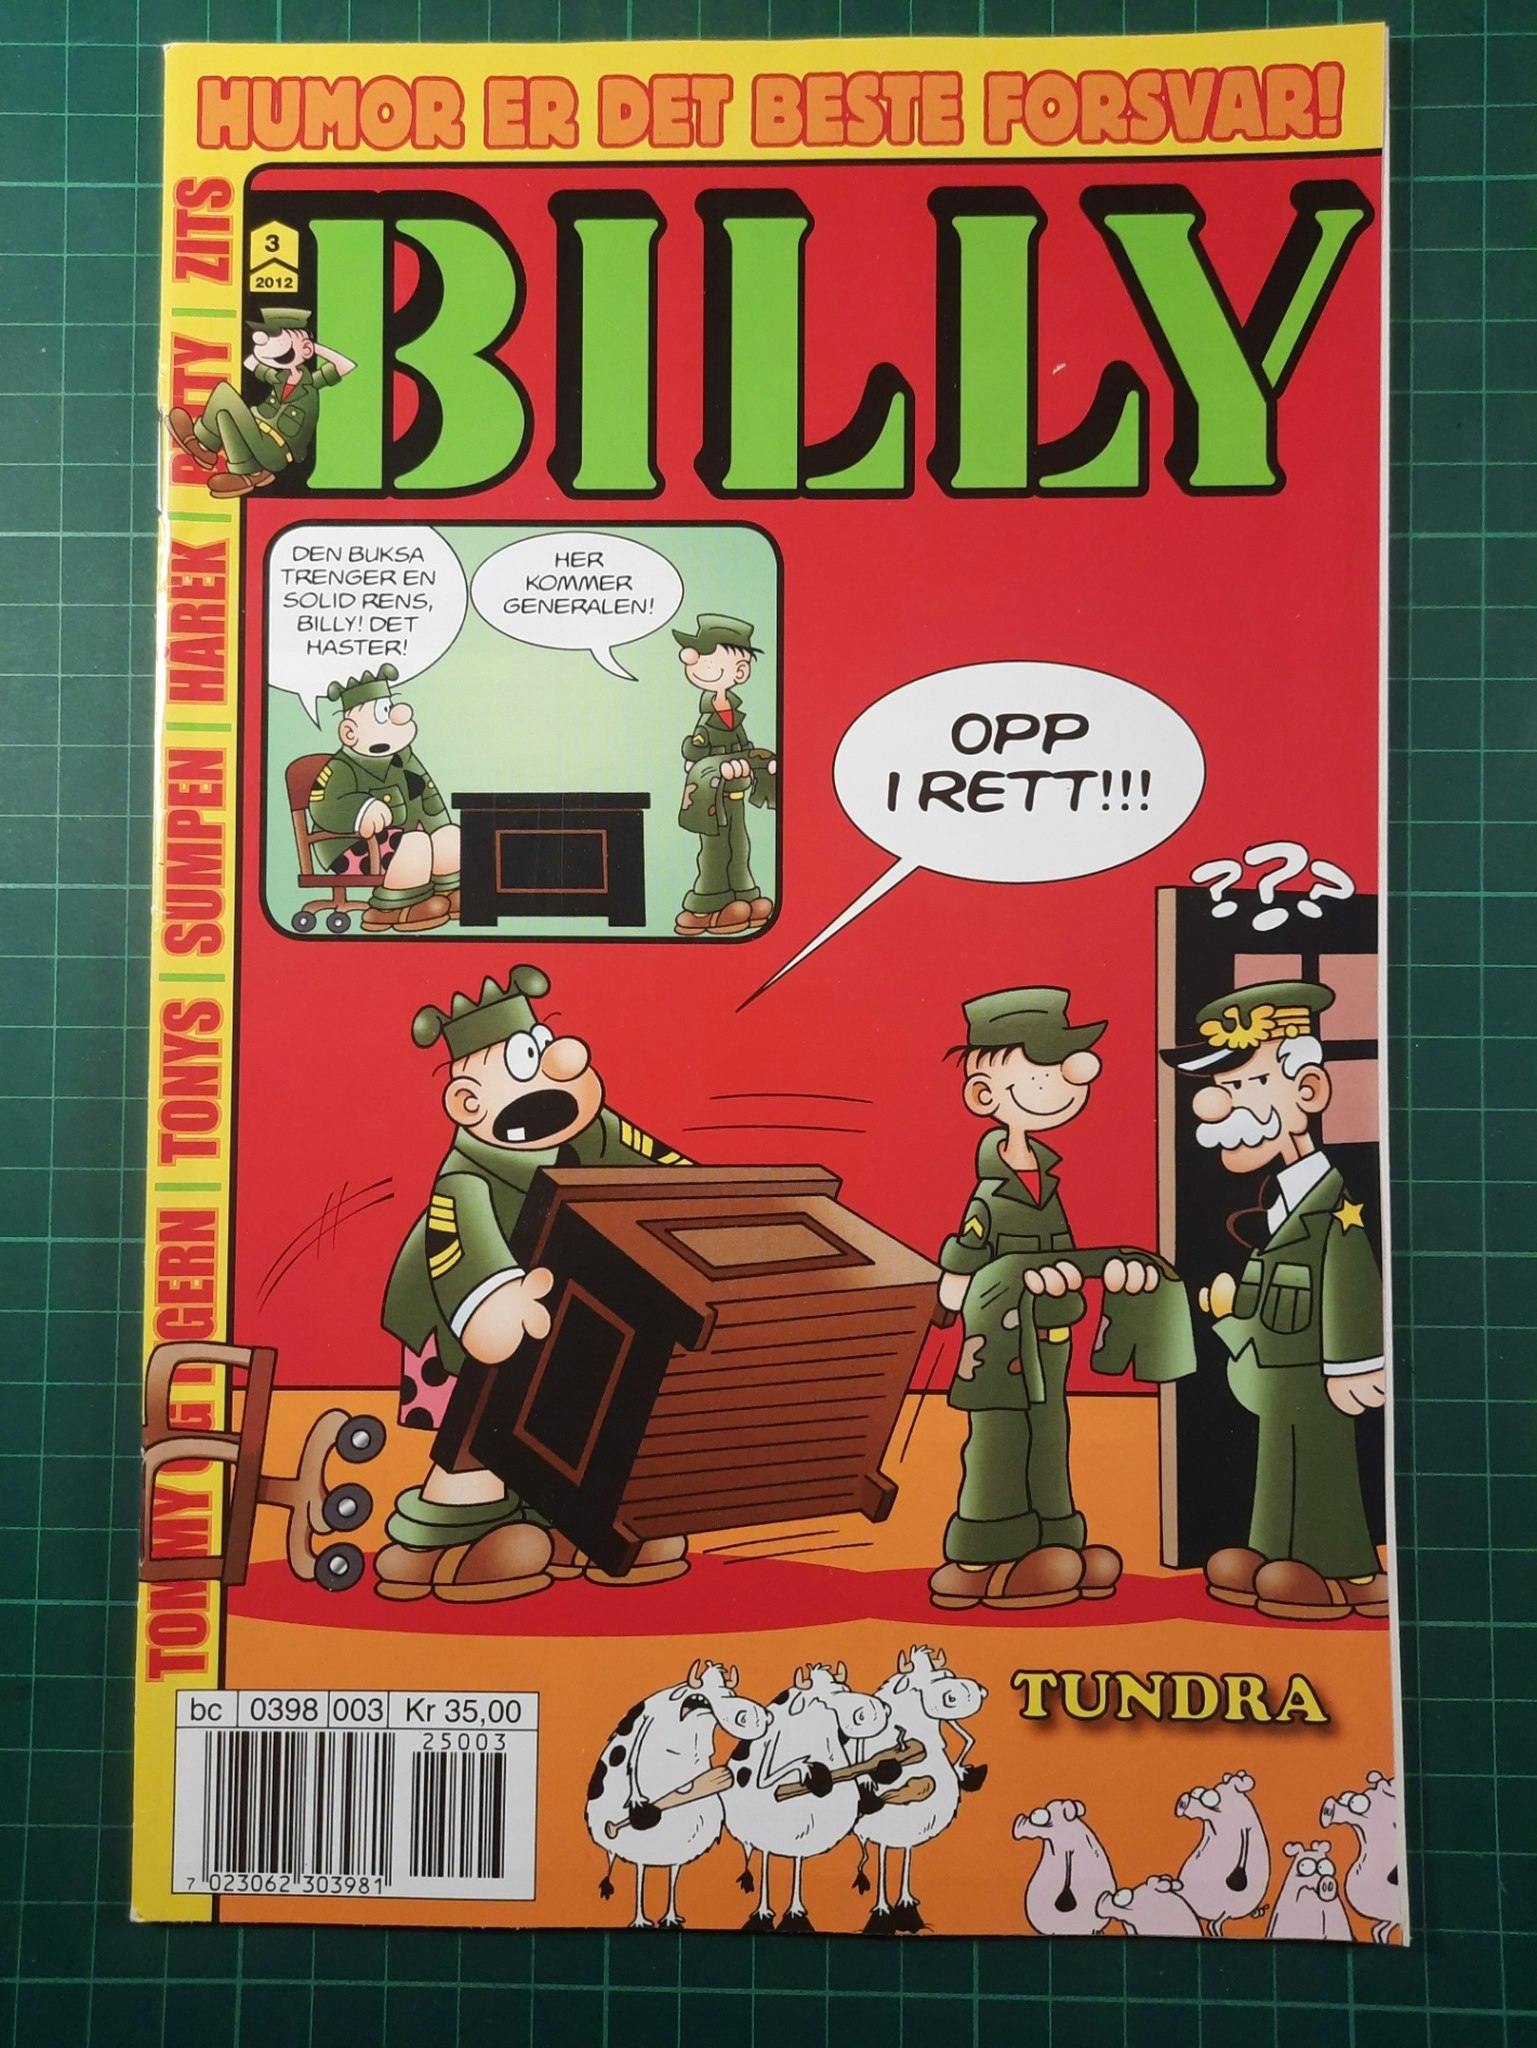 Billy 2012 - 03